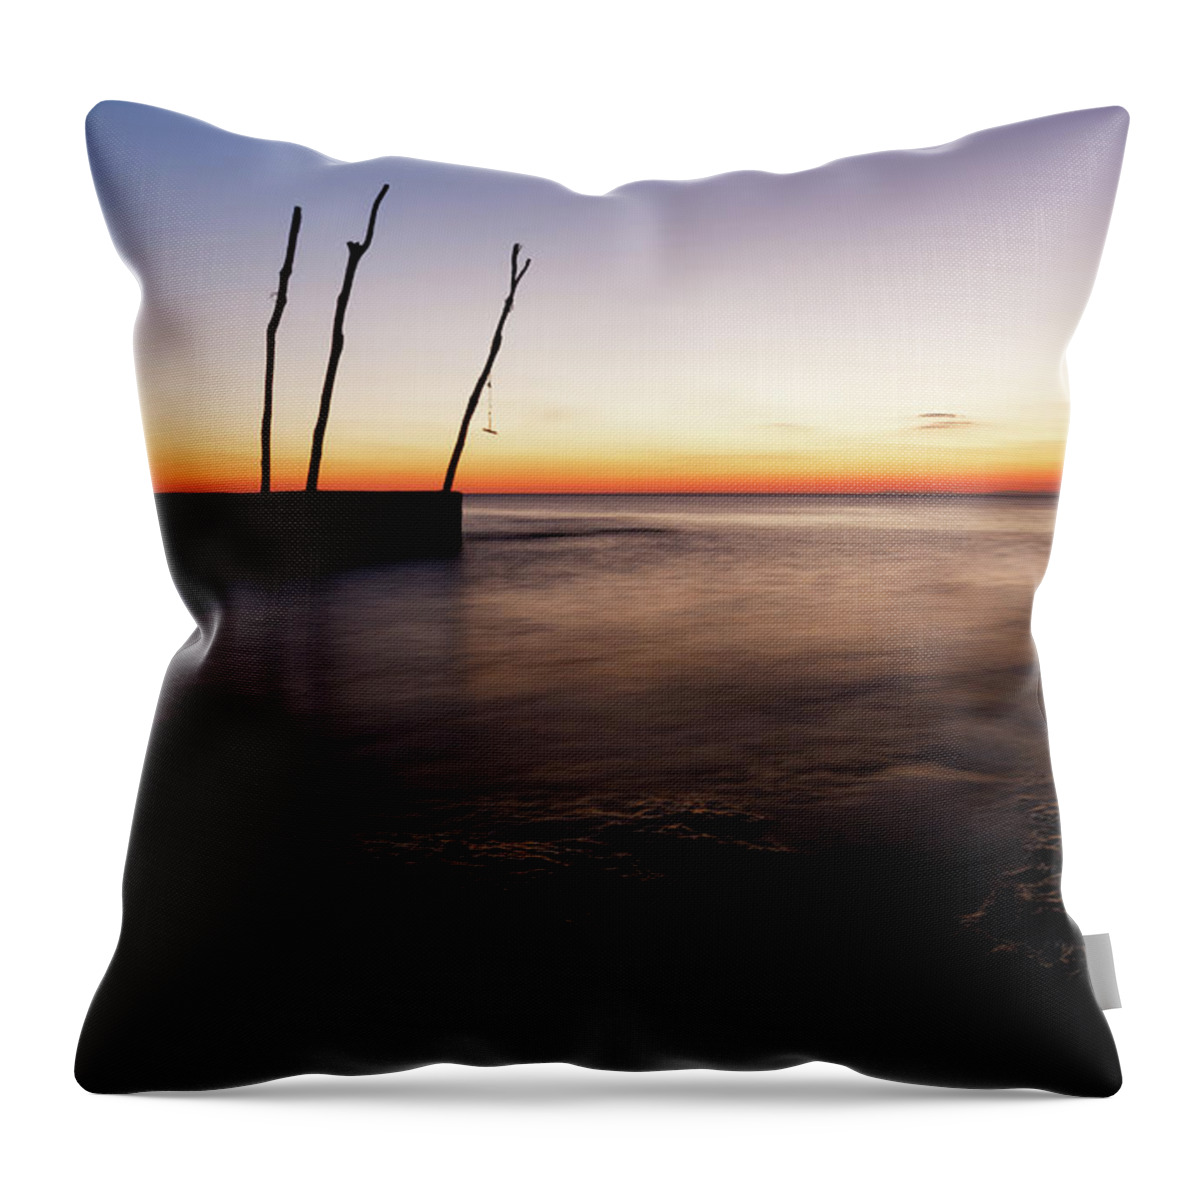 Ba�anija Throw Pillow featuring the photograph Sunset at basanija by Ian Middleton